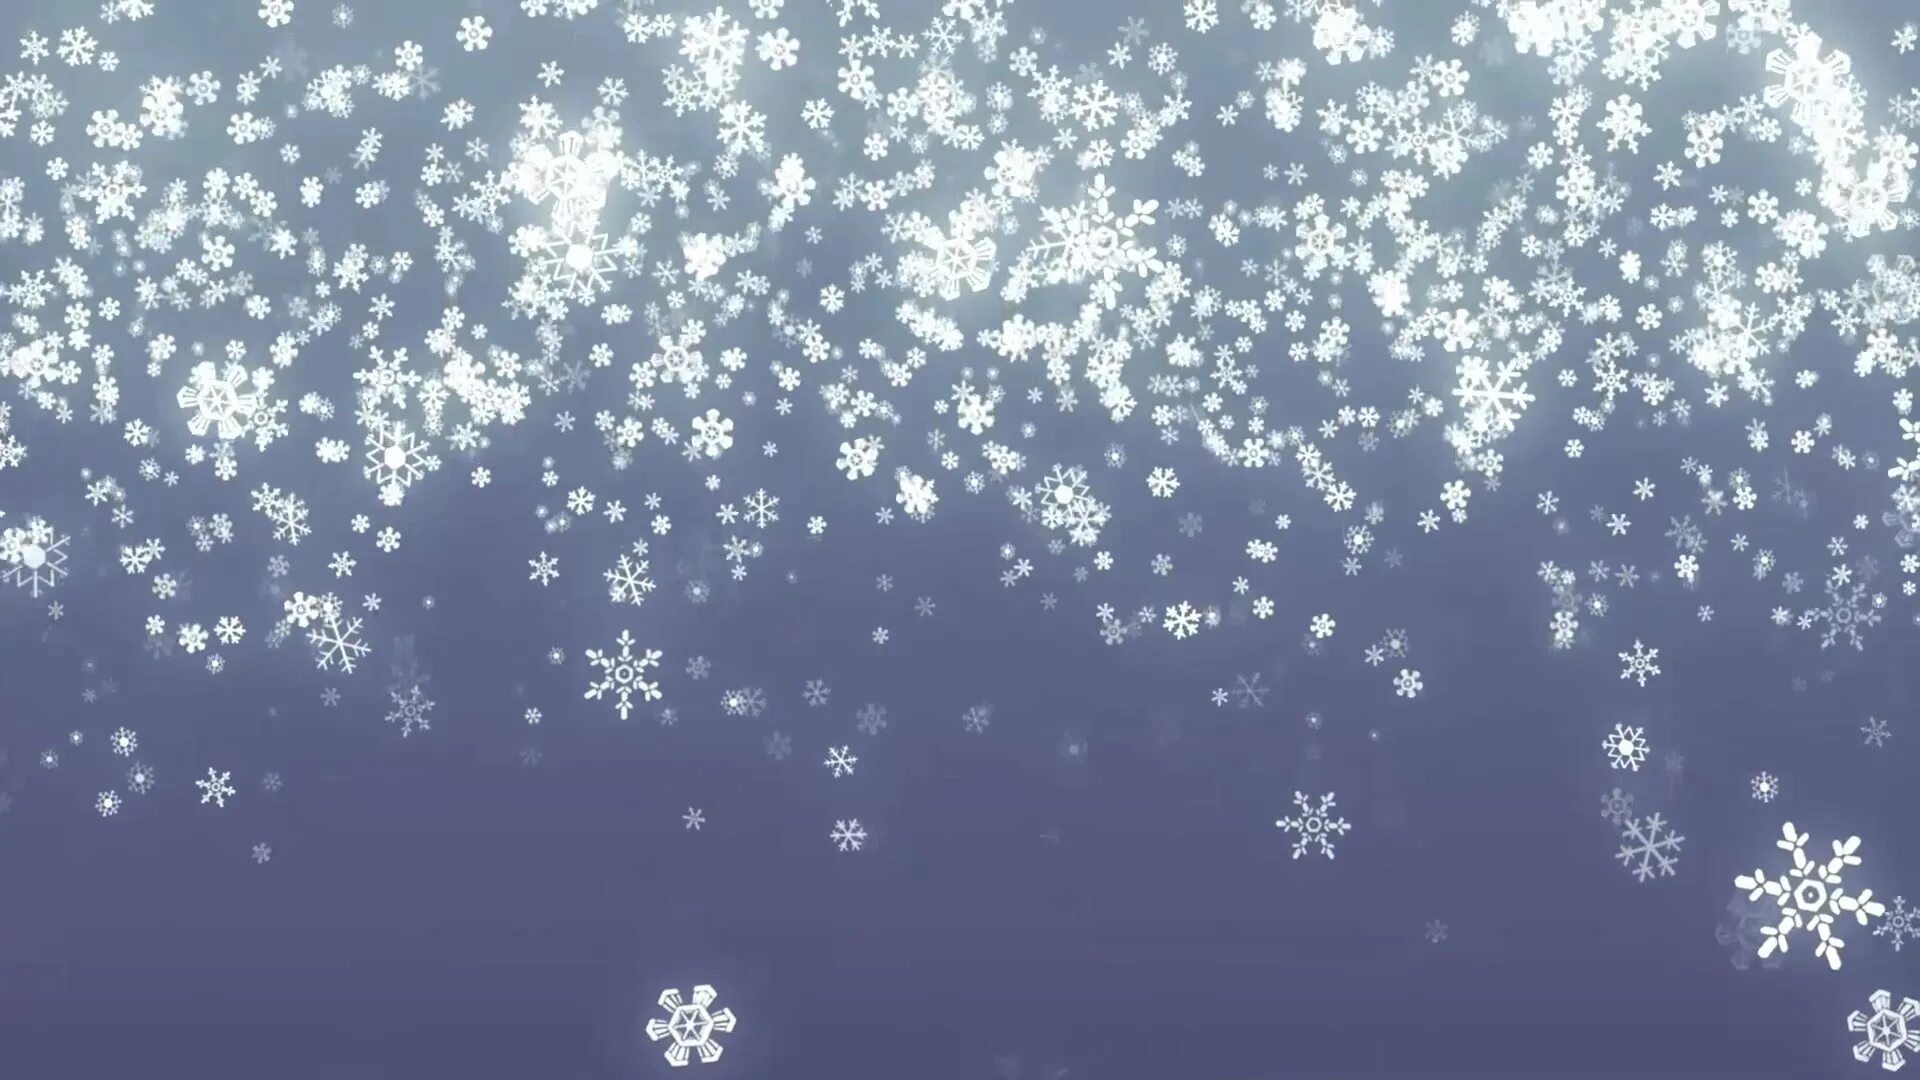 Снежинки падают. Падающий снег. Снег анимация. Снежинки снегопад. Падающий снег позволяет узреть